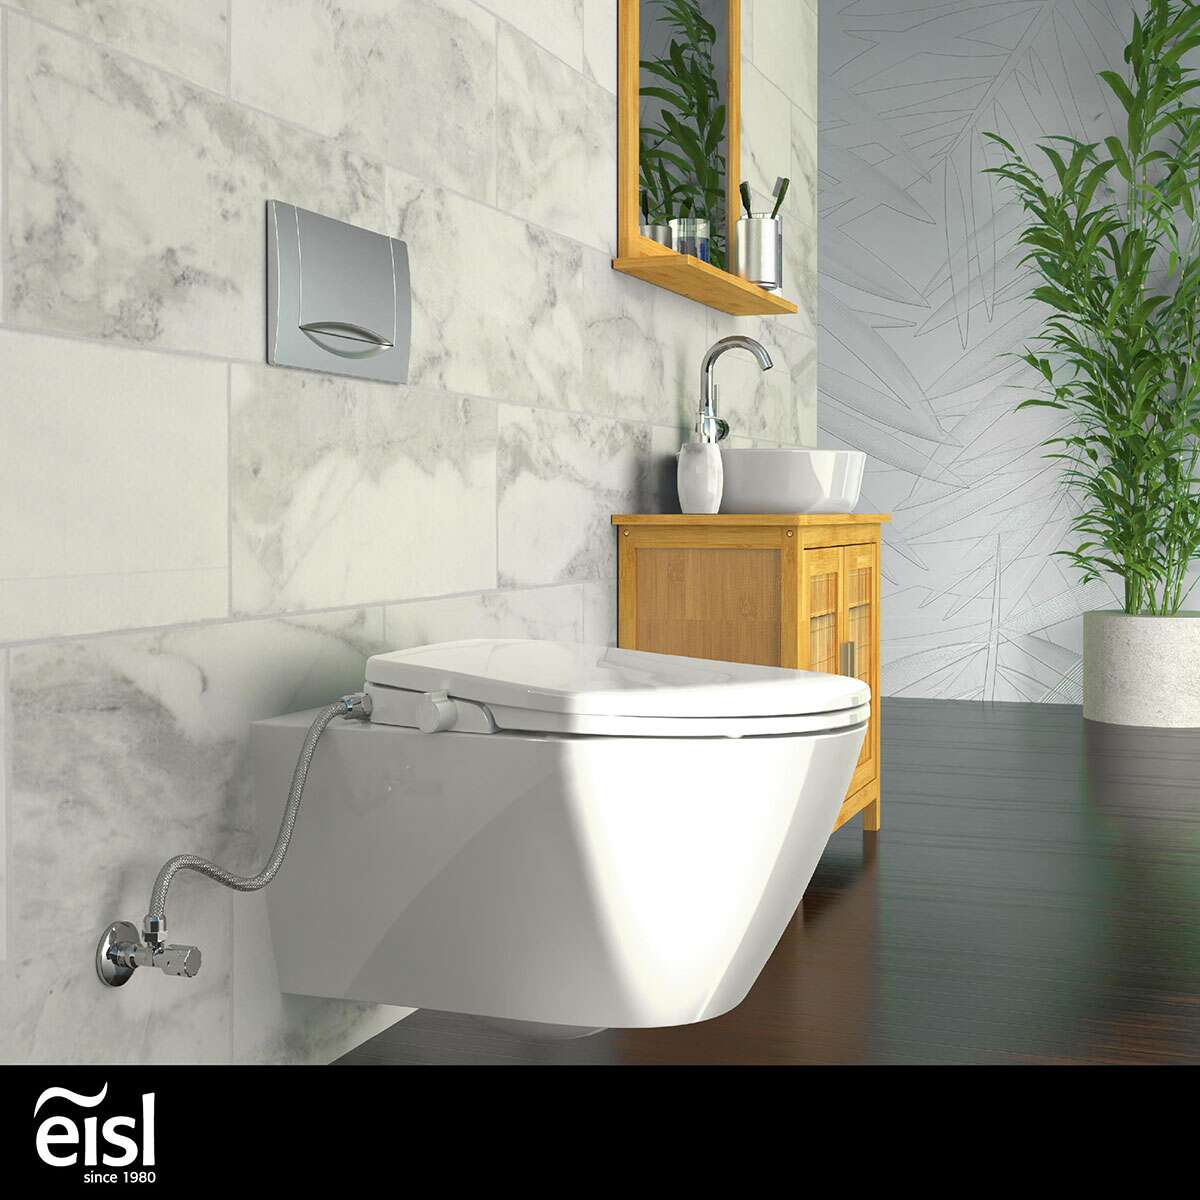 Eisl Dusch EDDW01 mit WC-Aufsatz, Schnellverschluss Absenkautomatik und